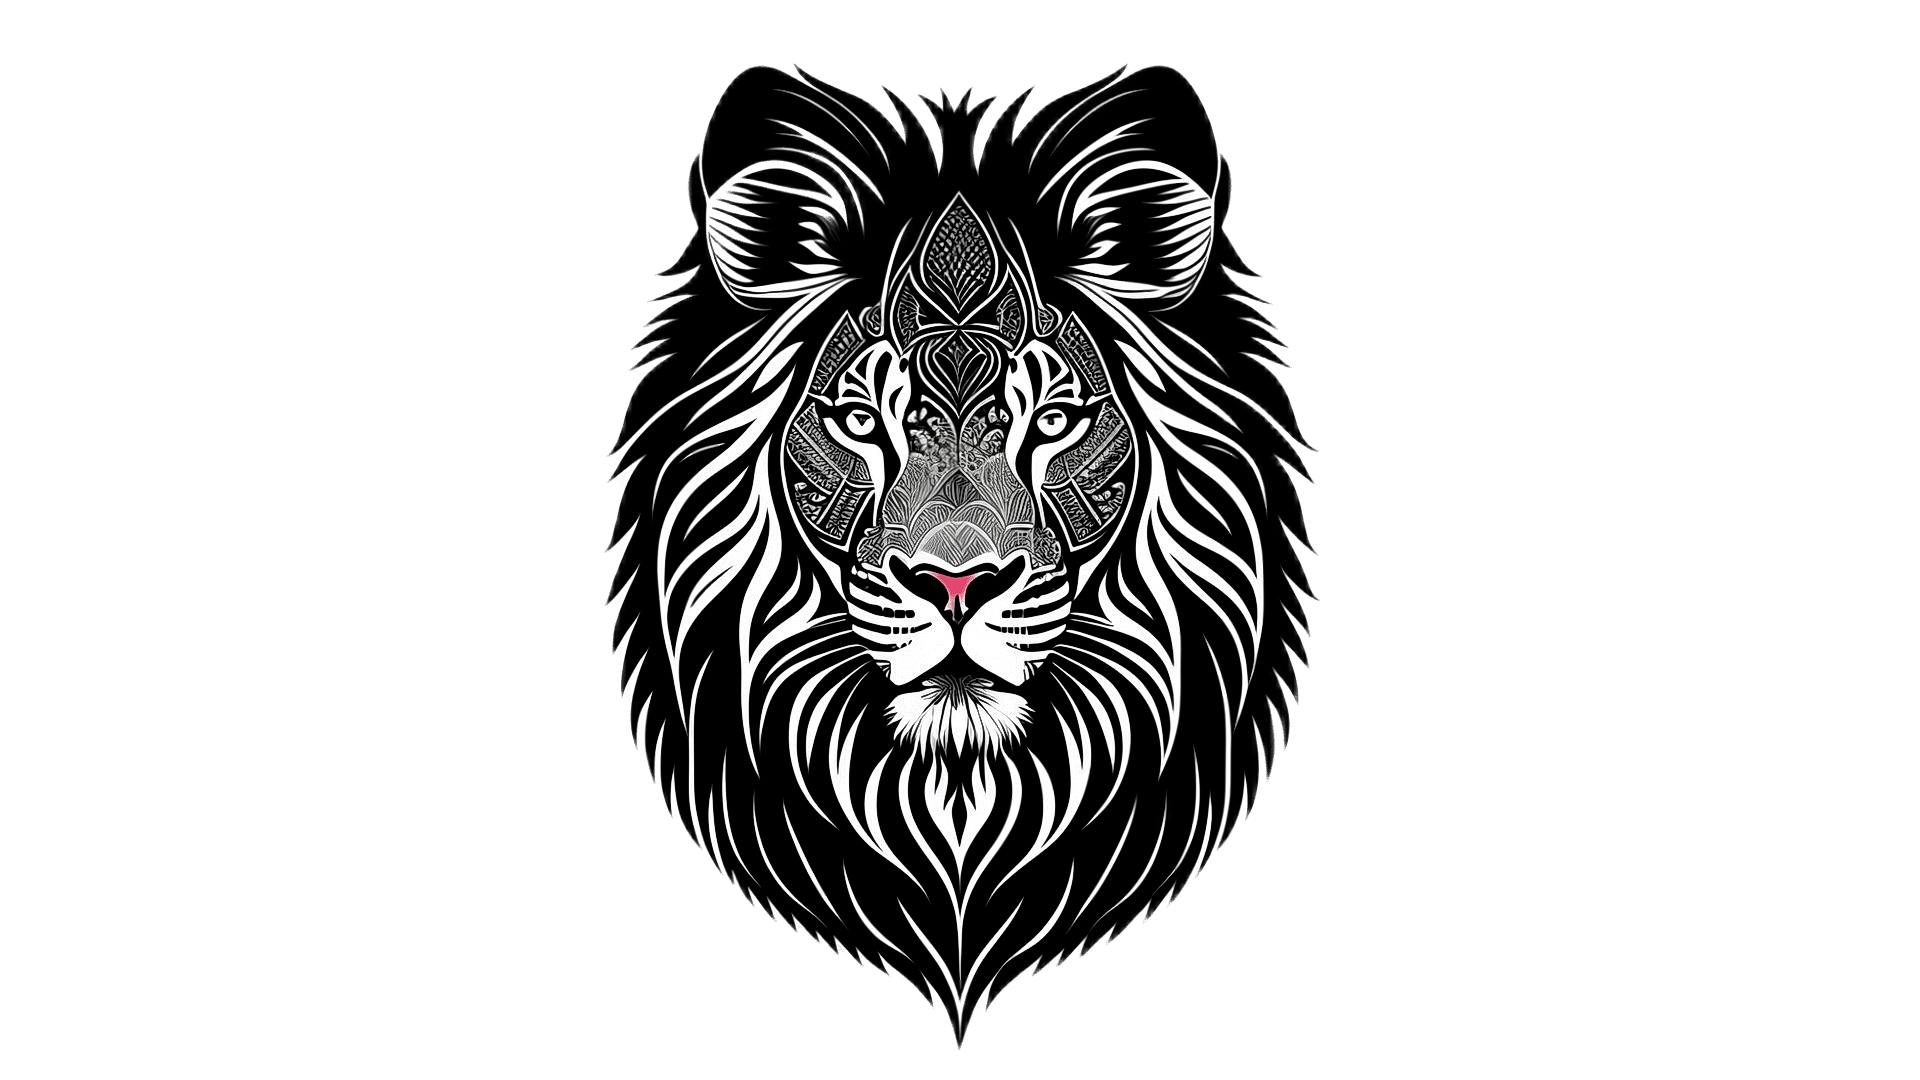 Бесплатное фото Рисунок голова льва на белом фоне